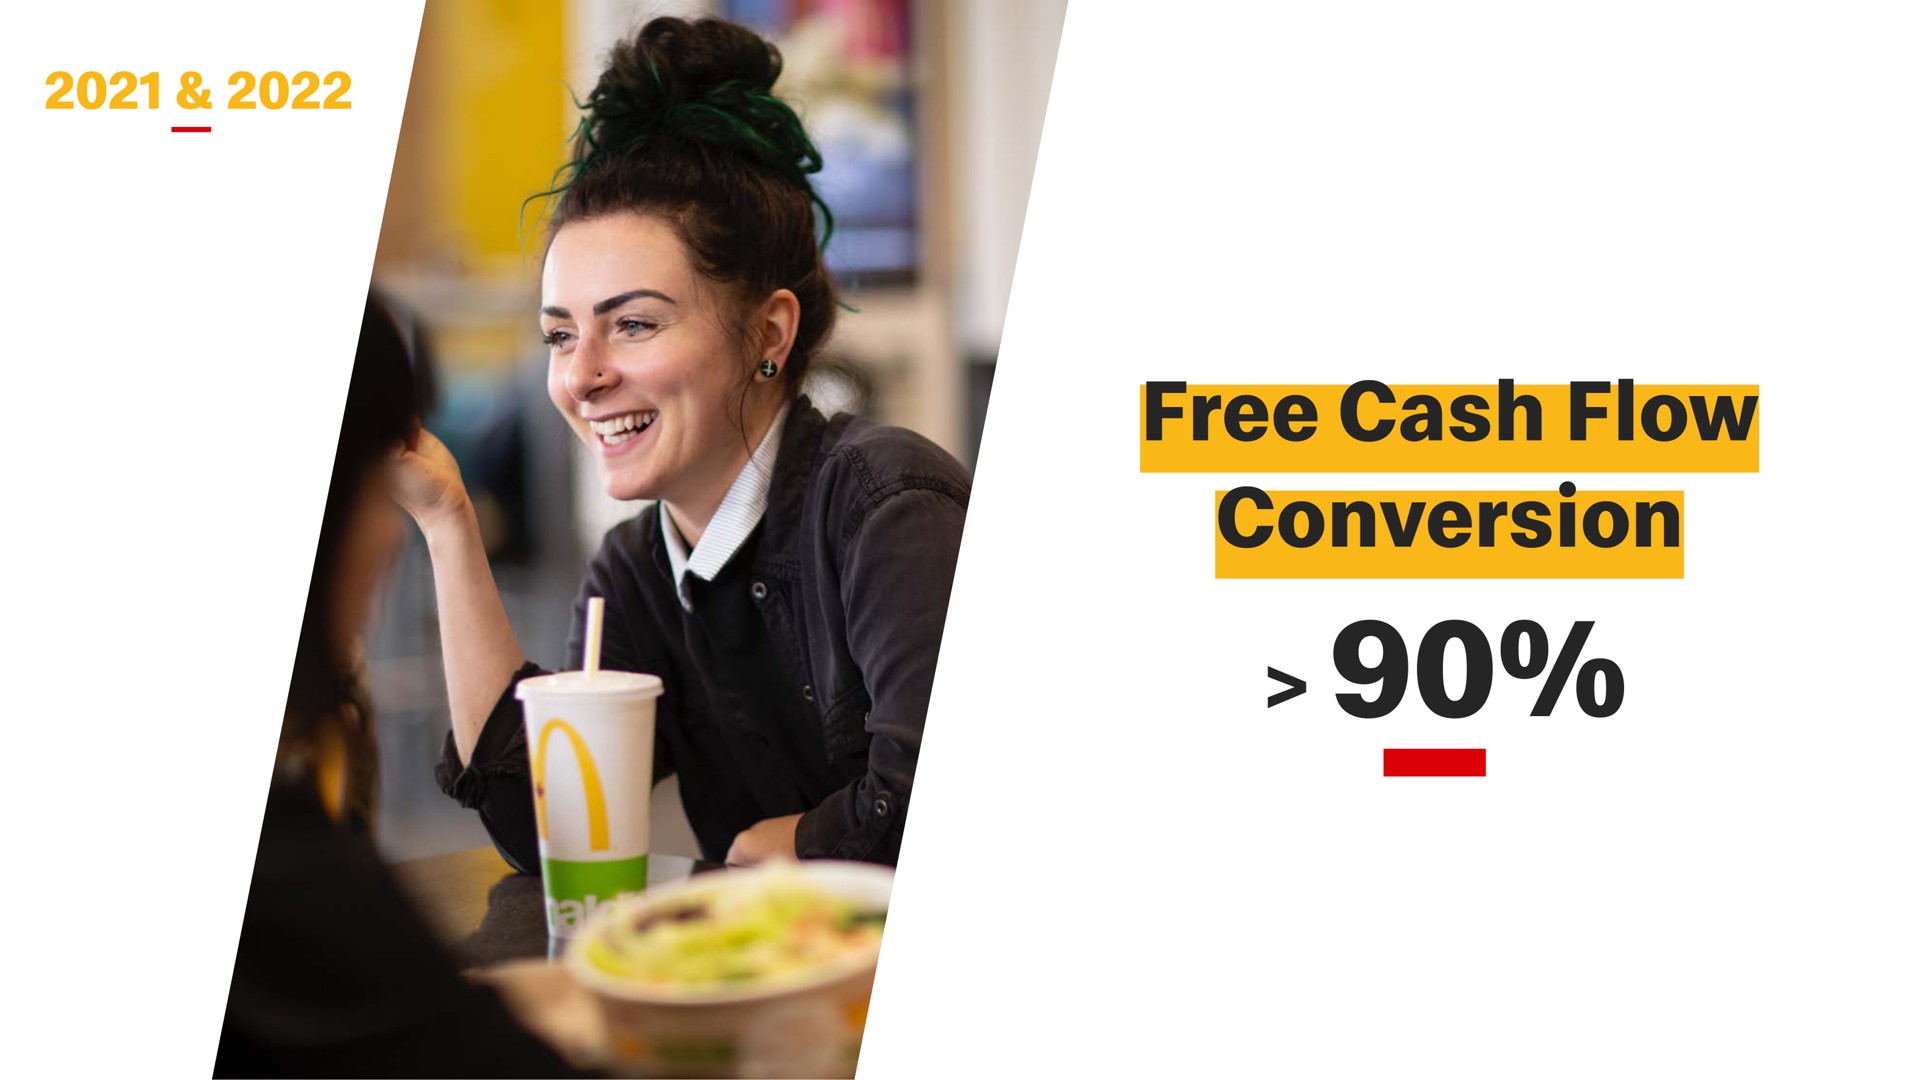 free cash flow conversion | McDonald's